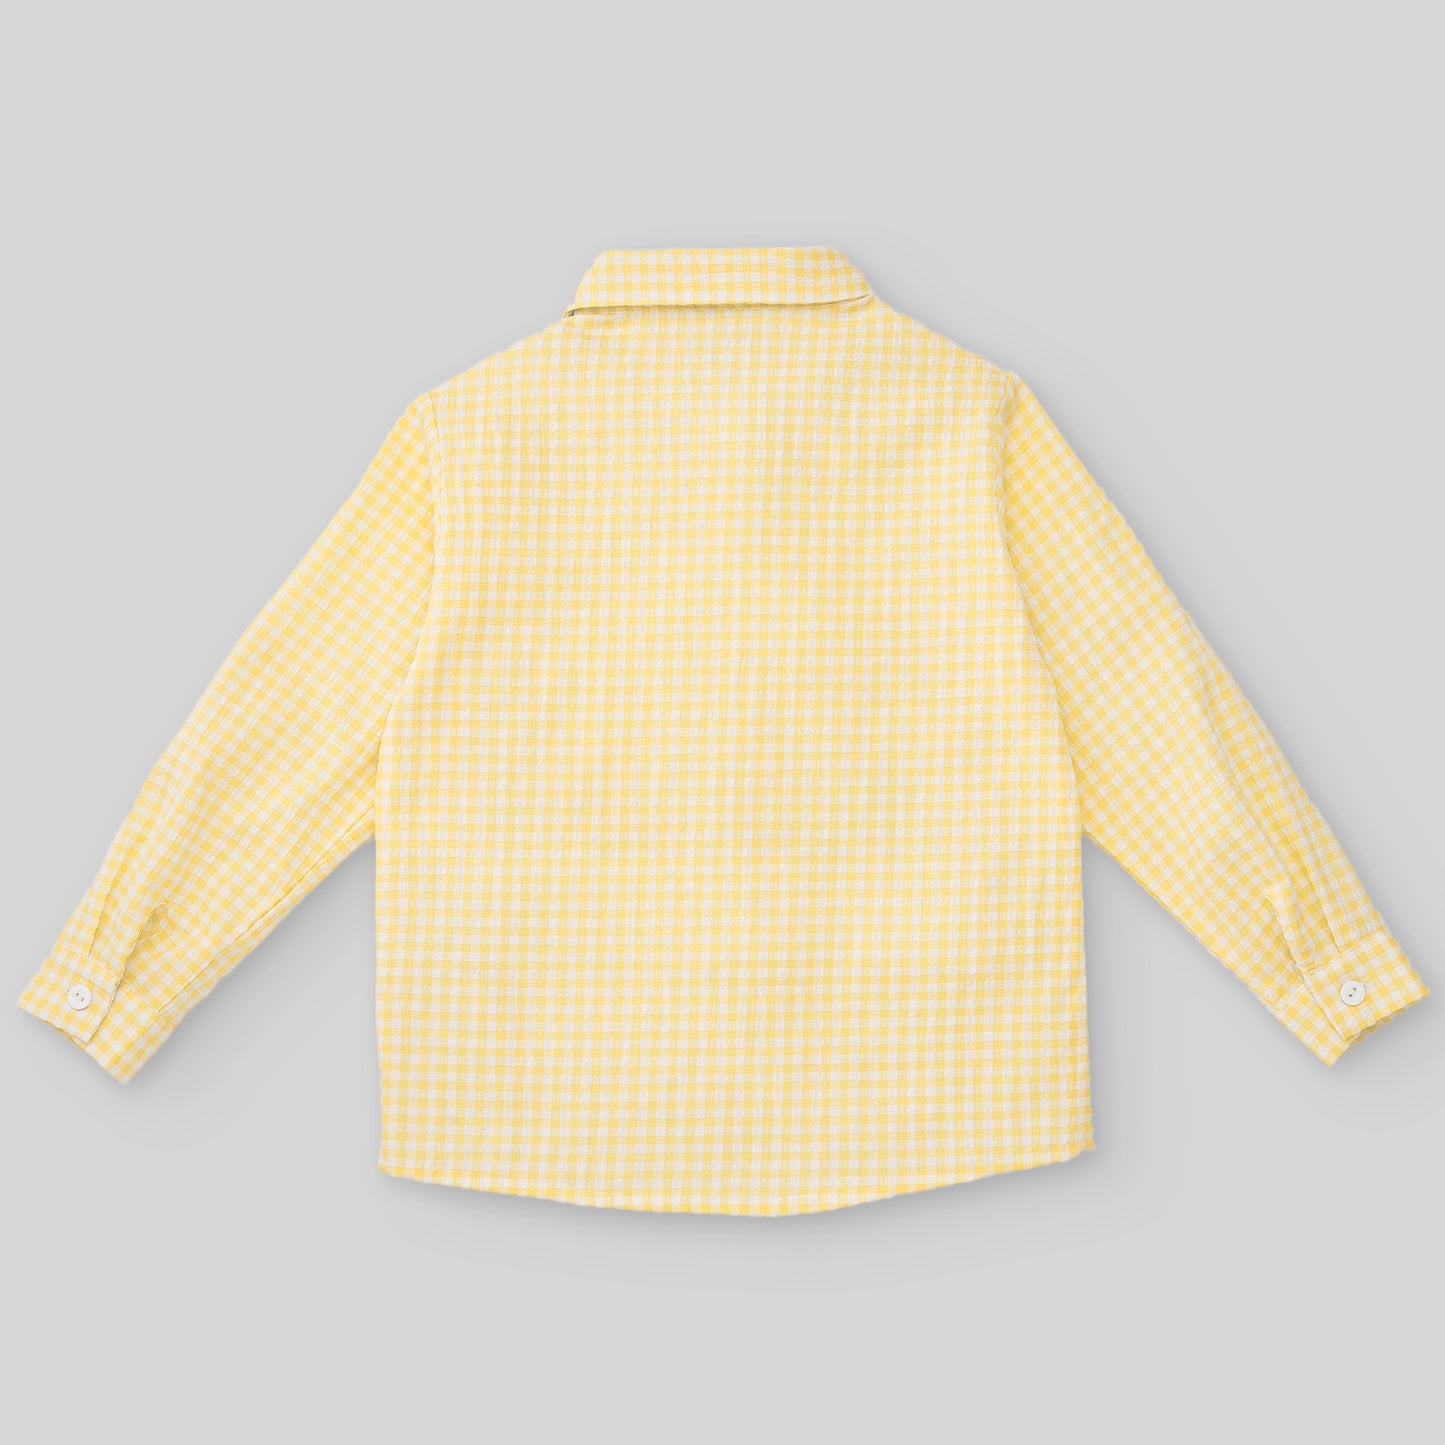 PAZ RODRIGUEZ Yellow-White Checkered Cotton Shirt